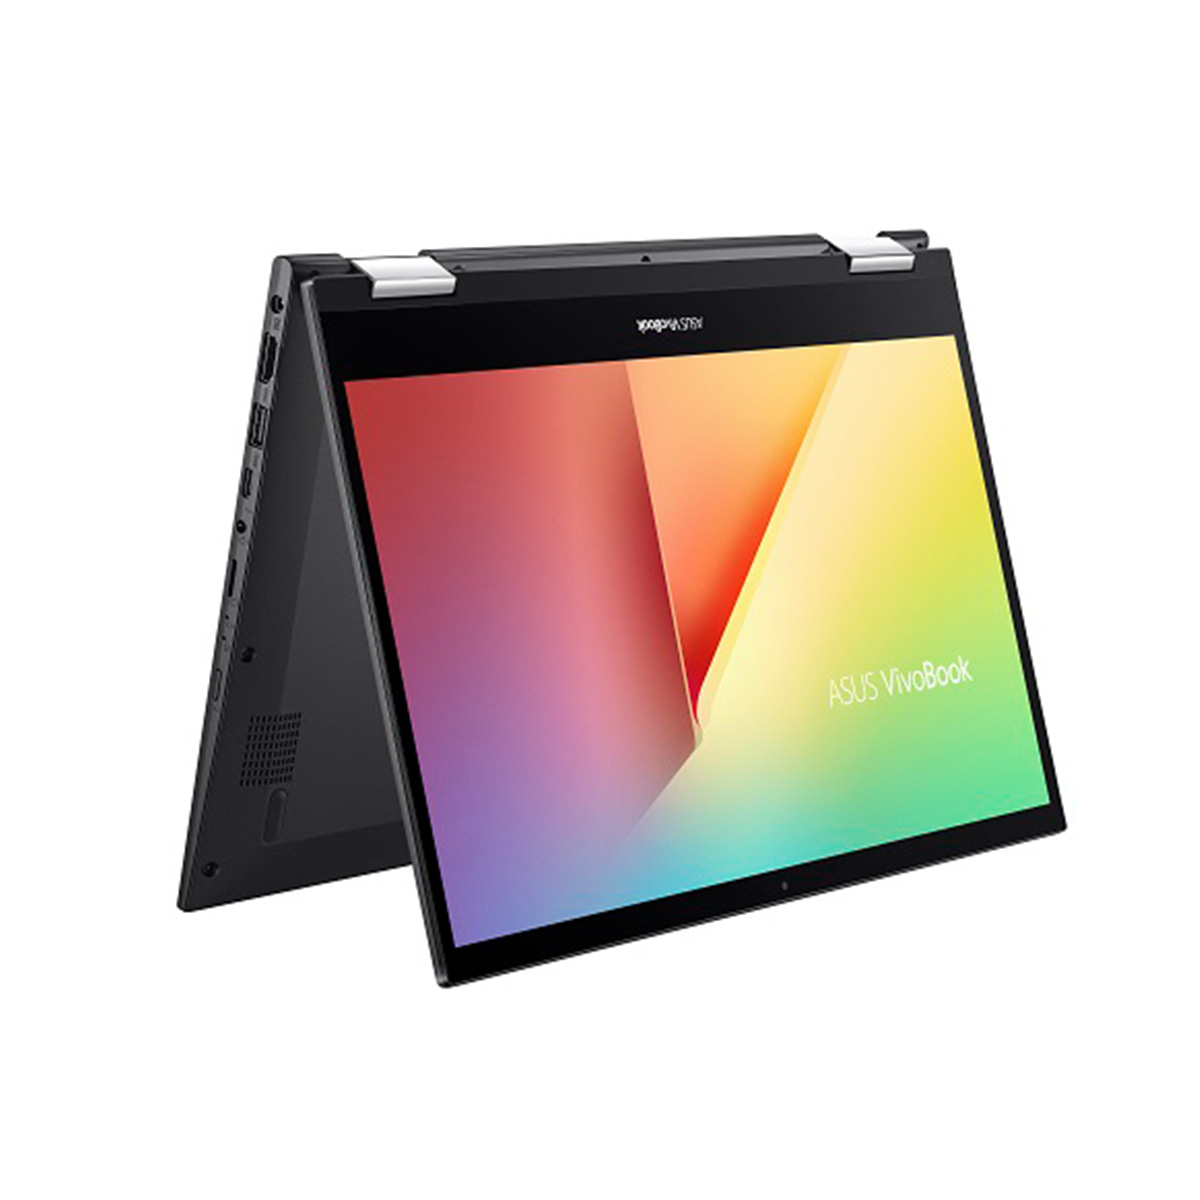 ノートパソコン14型 ASUS VivoBook Flip 14 Corei5/メモリ8GB/SSD512GB/Win10/WPS office付